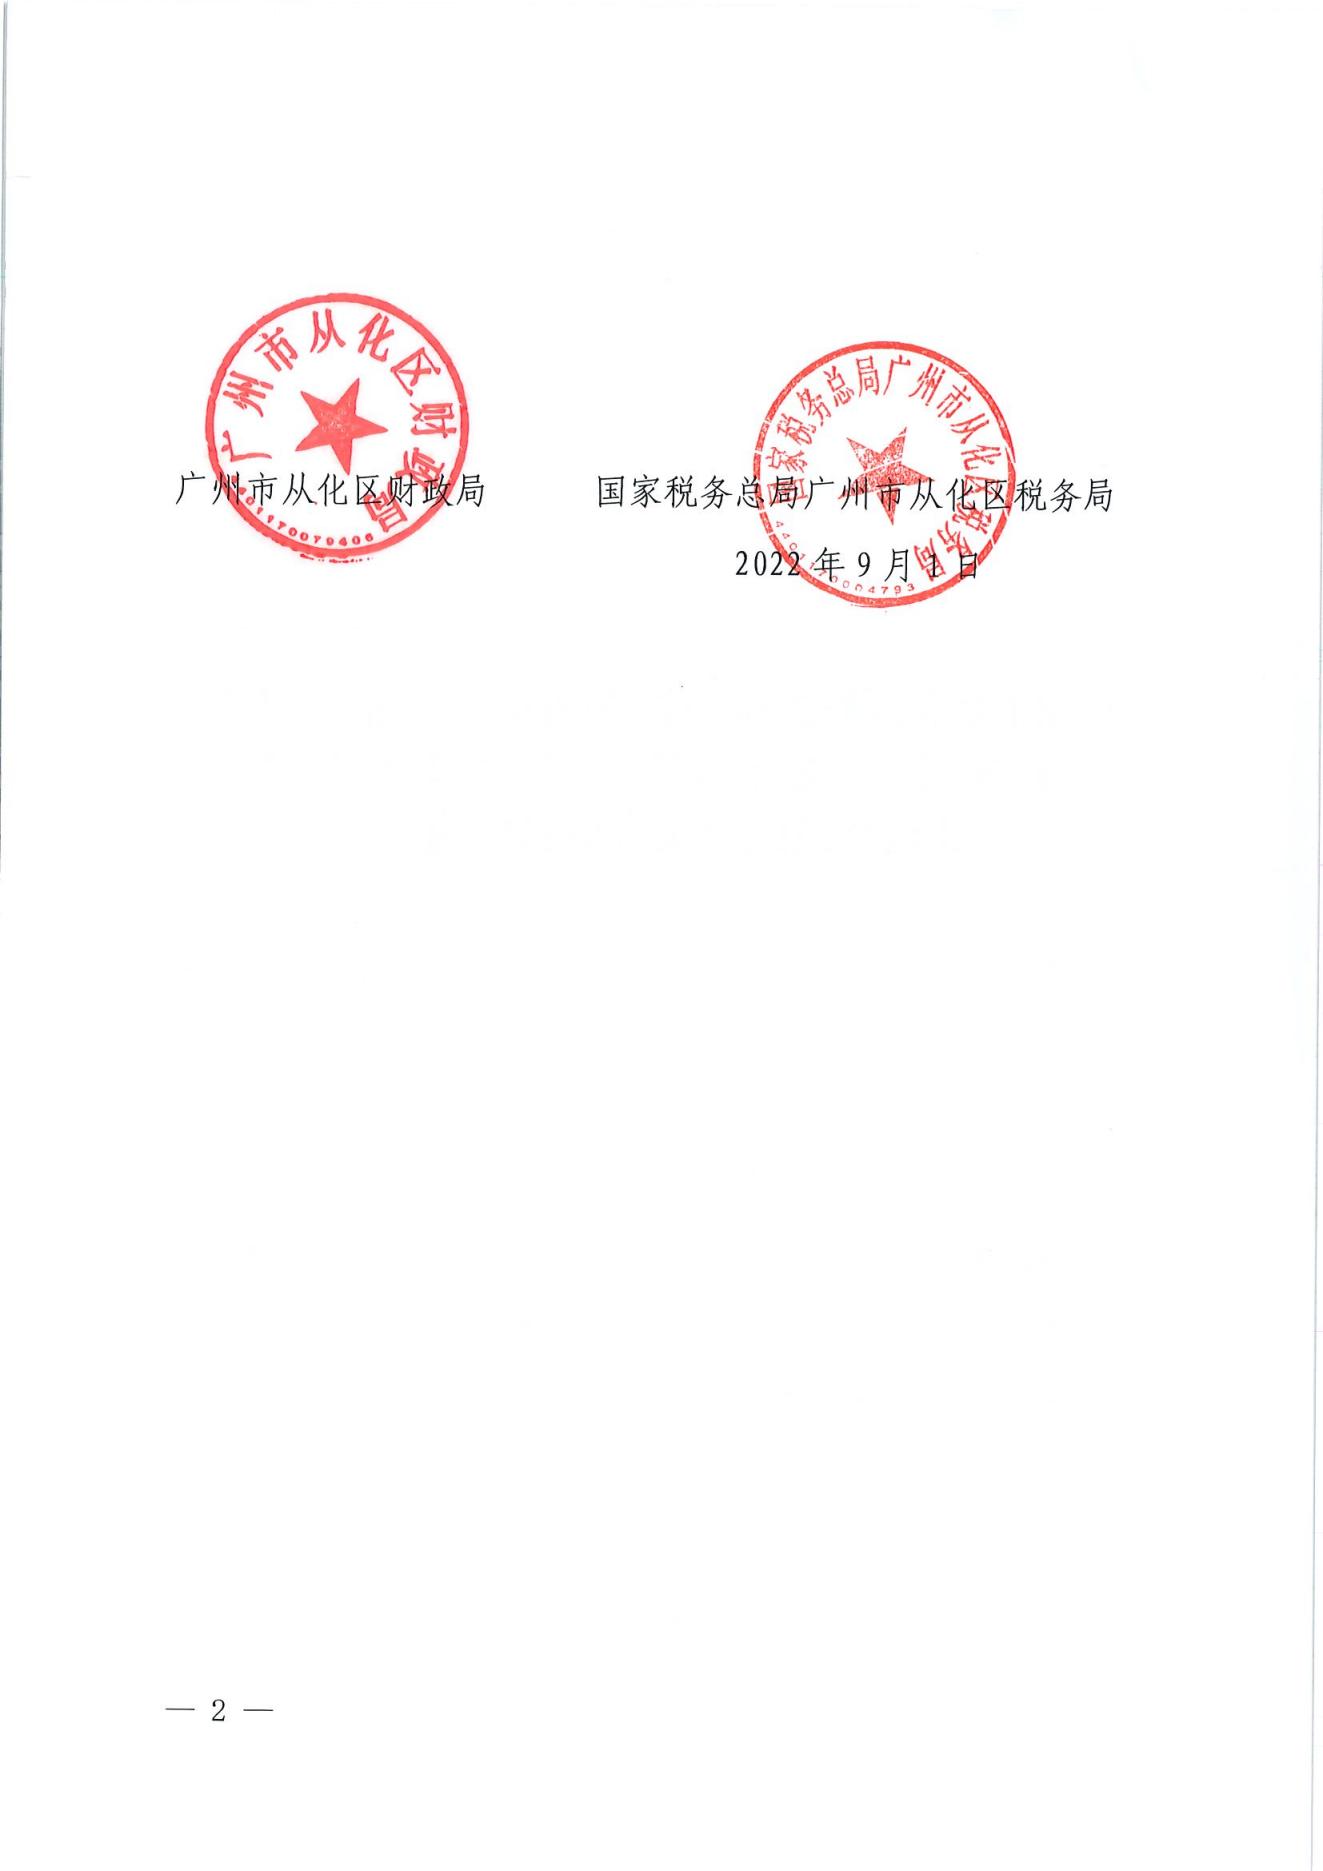 （扫描）广州市从化区财政局 国家税务总局广州市从化区税务局关于复审合格获得区级2022年度非营利组织免税资格名单的公告_01.jpg